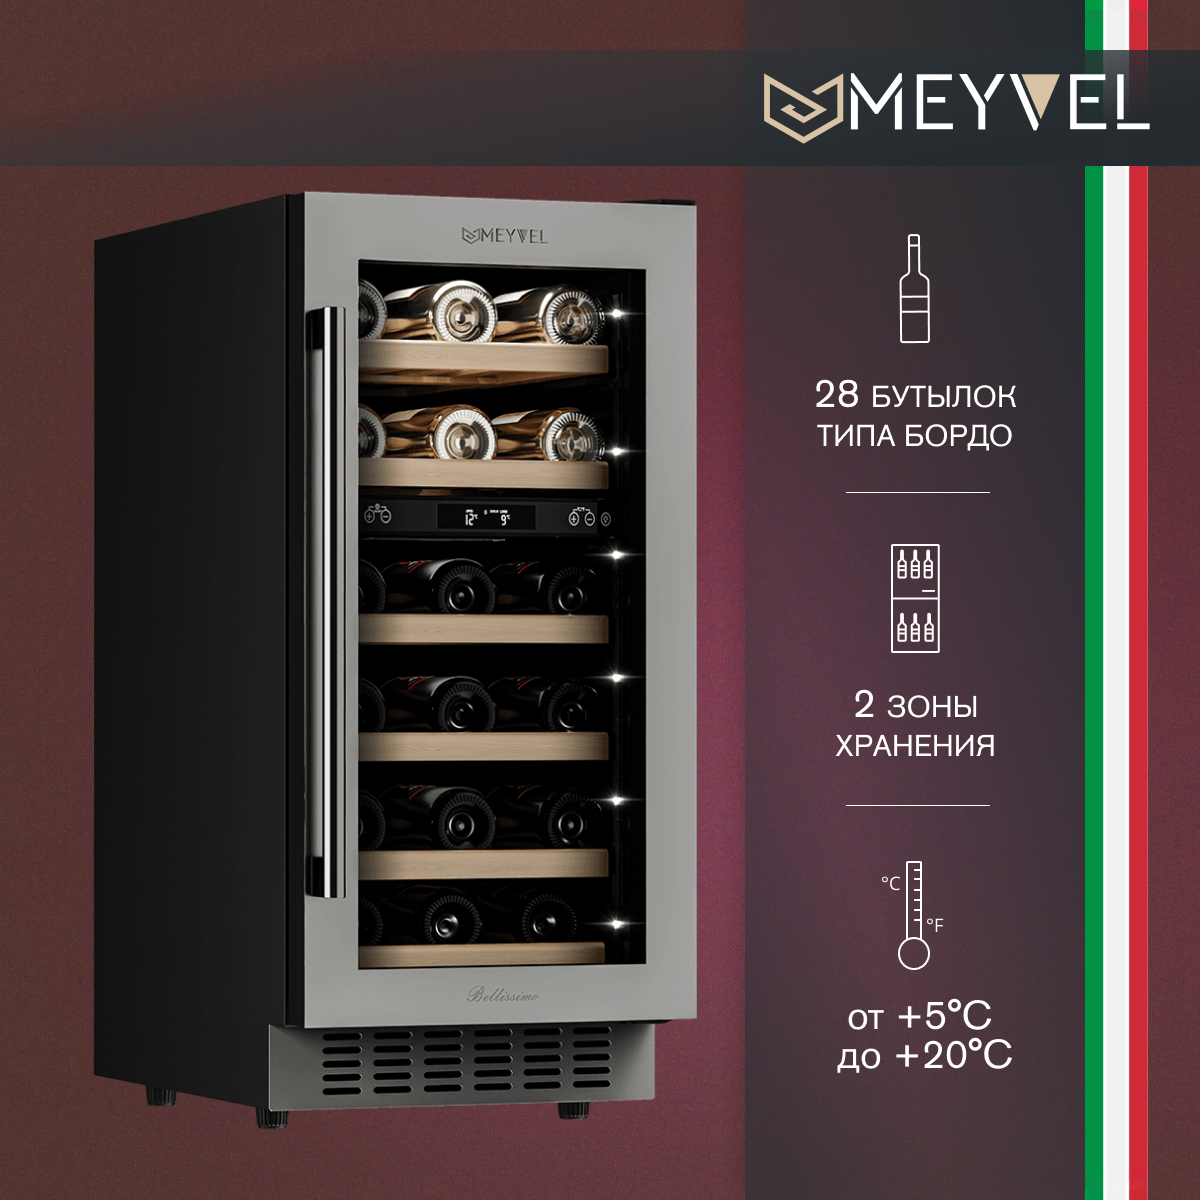 Винный холодильный шкаф Meyvel MV28-KST2 компрессорный (встраиваемый / отдельностоящий холодильник для вина на 28 бутылок)